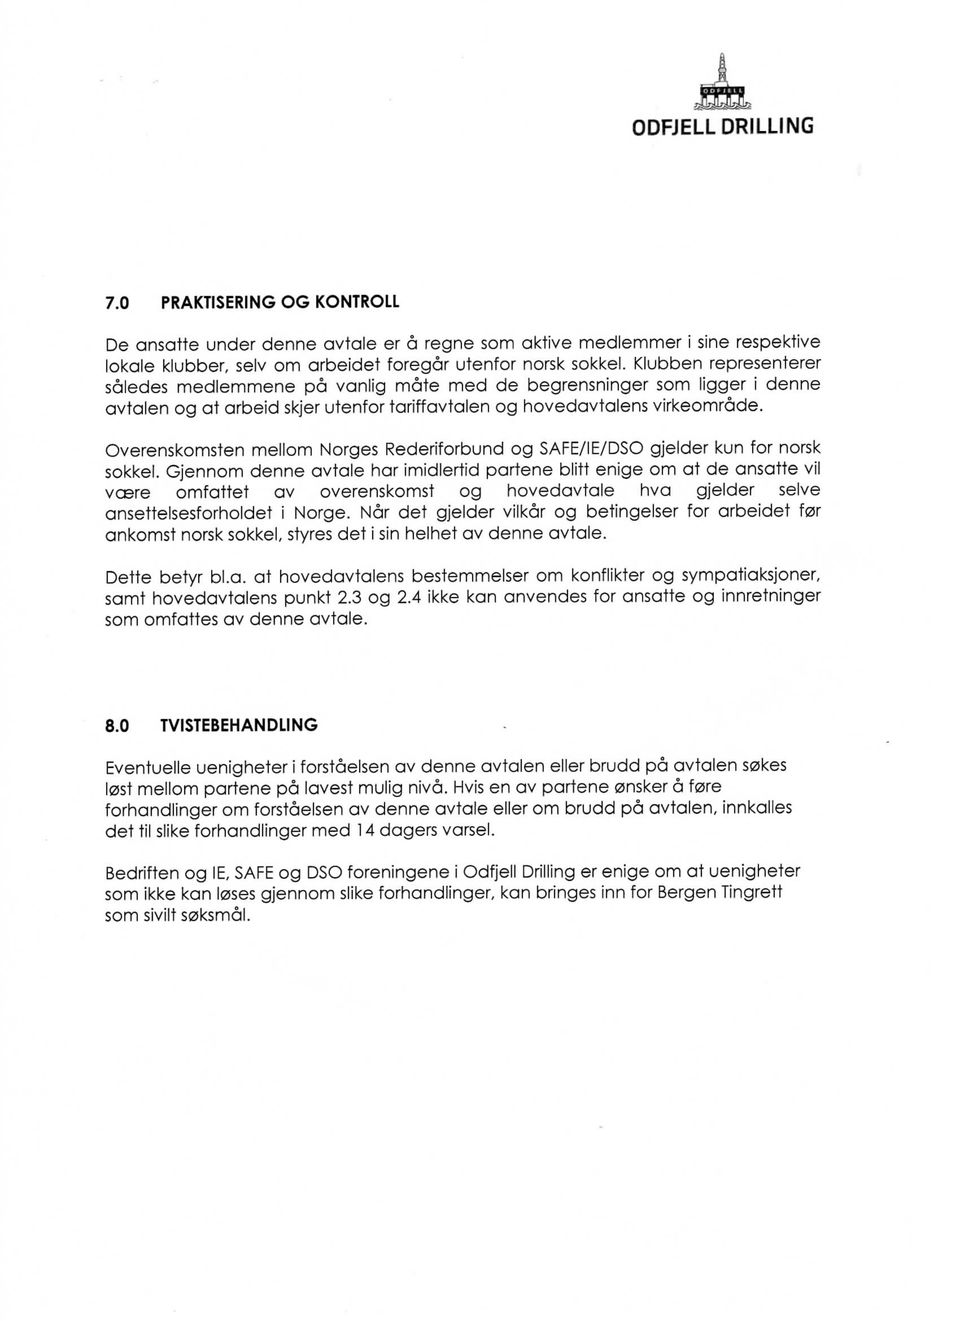 Overenskomsten mellom Norges Rederiforbund og SAFE/IE/DSO gjelder kun for norsk sokkel.